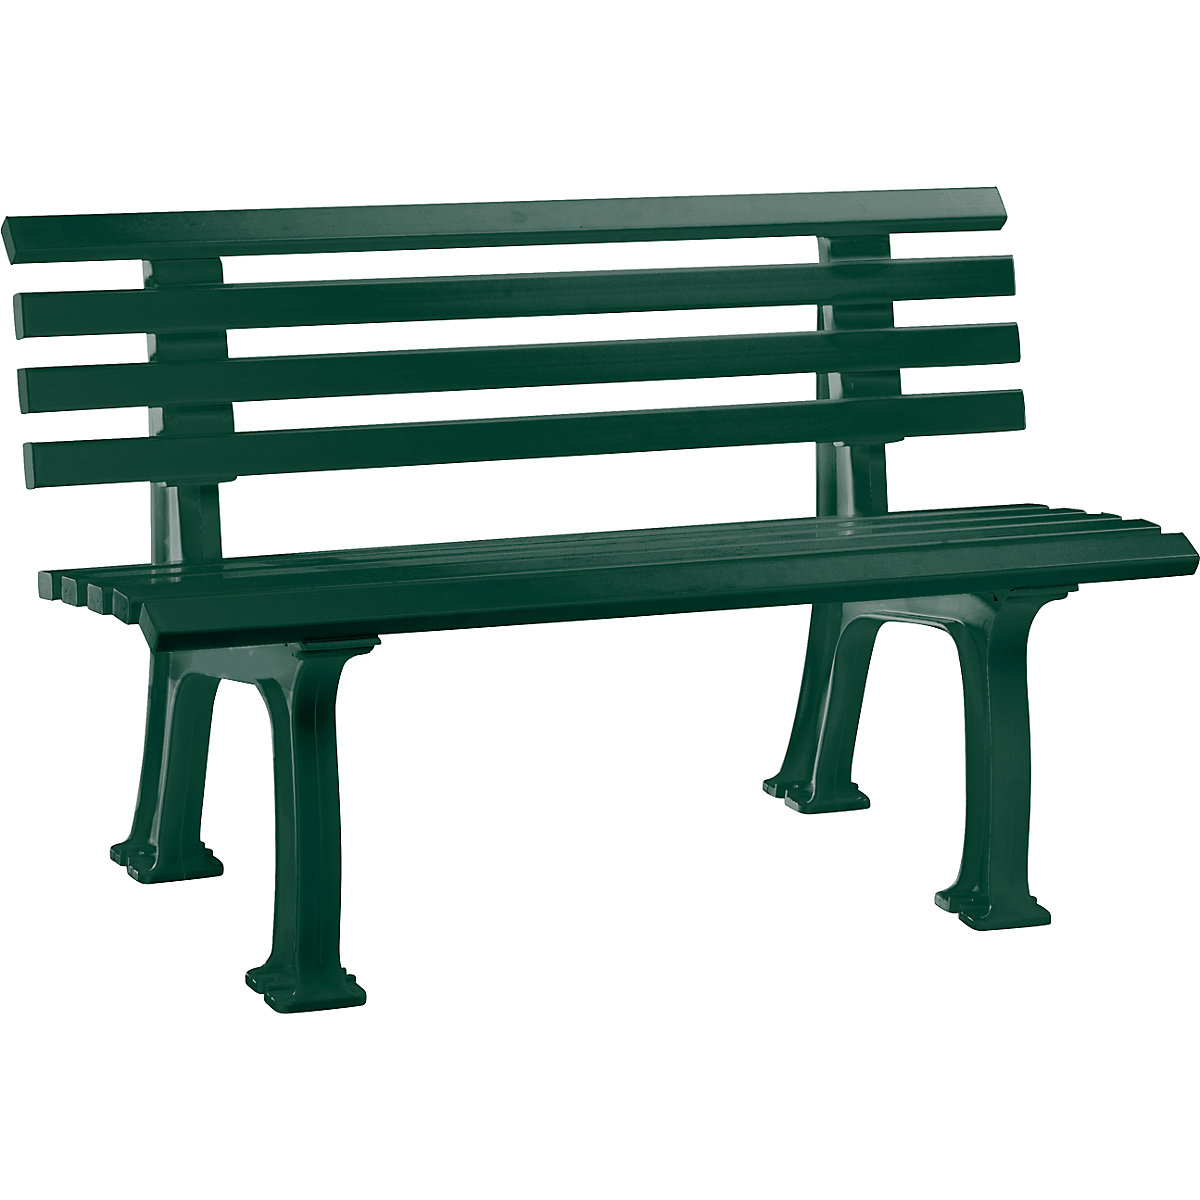 Parková lavička z plastu, s 9 lištami, šířka 1200 mm, mechově zelená-8